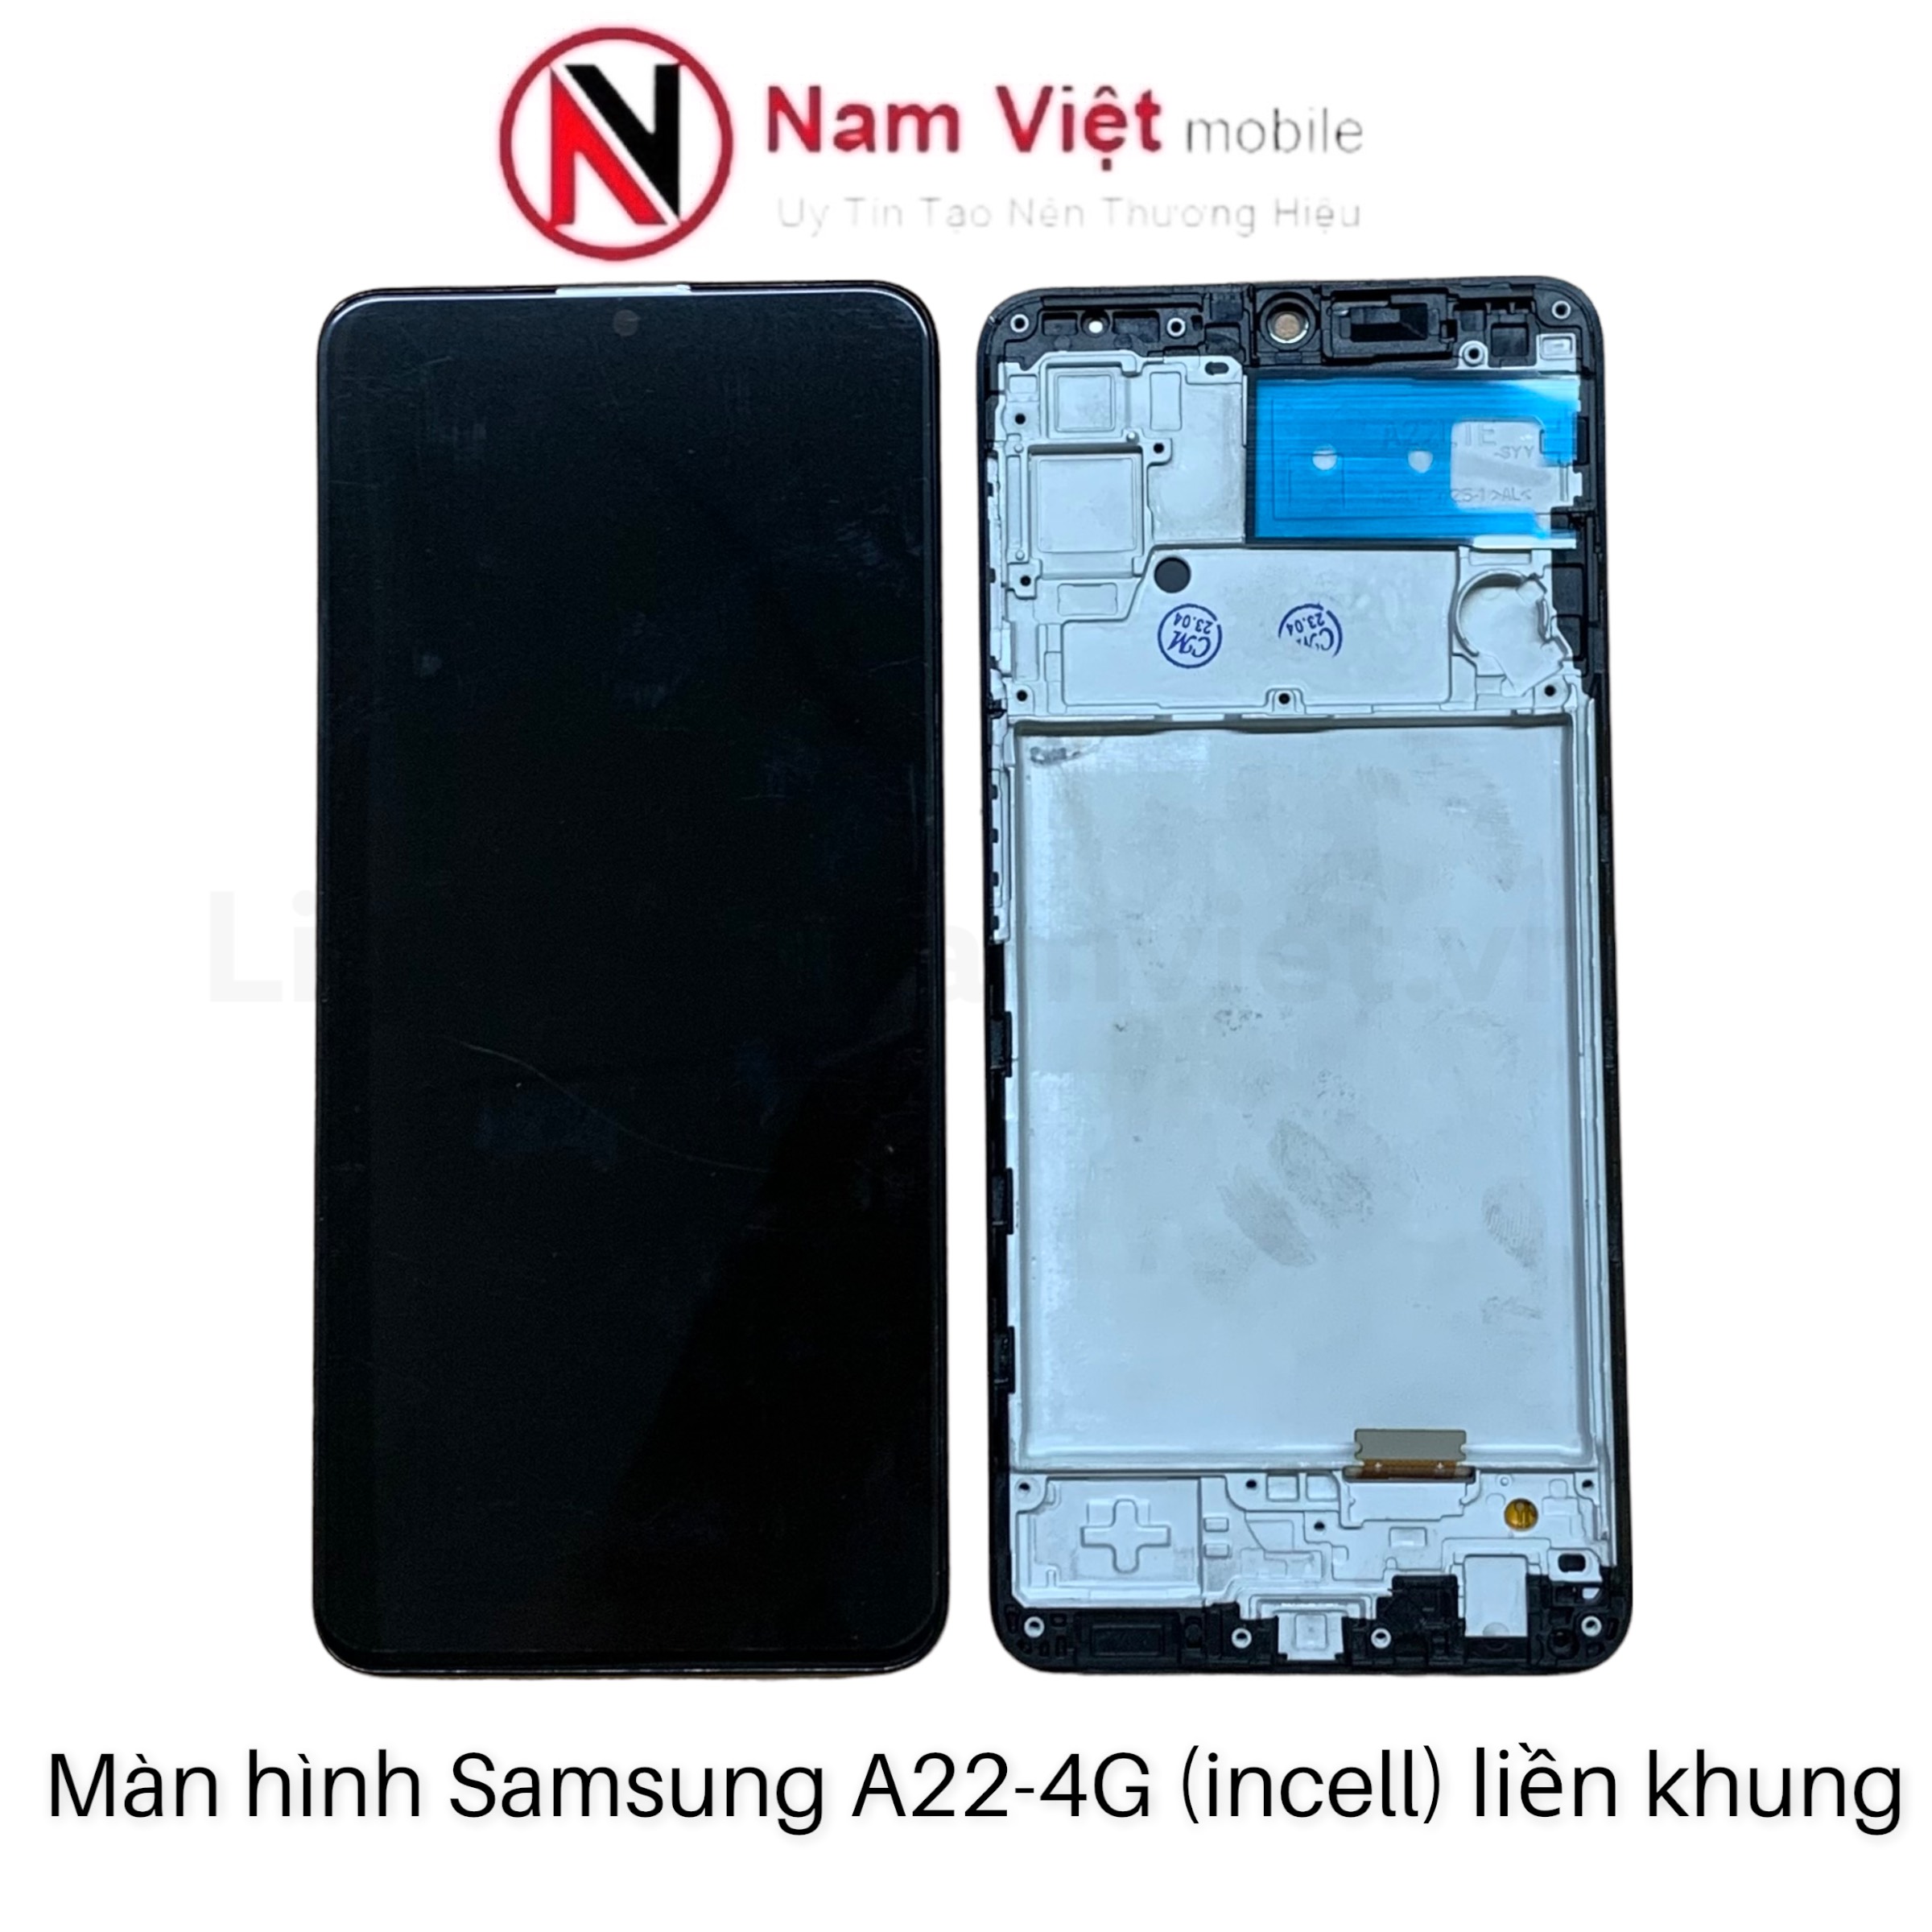 Màn hình Samsung A22 - 4G / 6.4in (Incell khung) đen